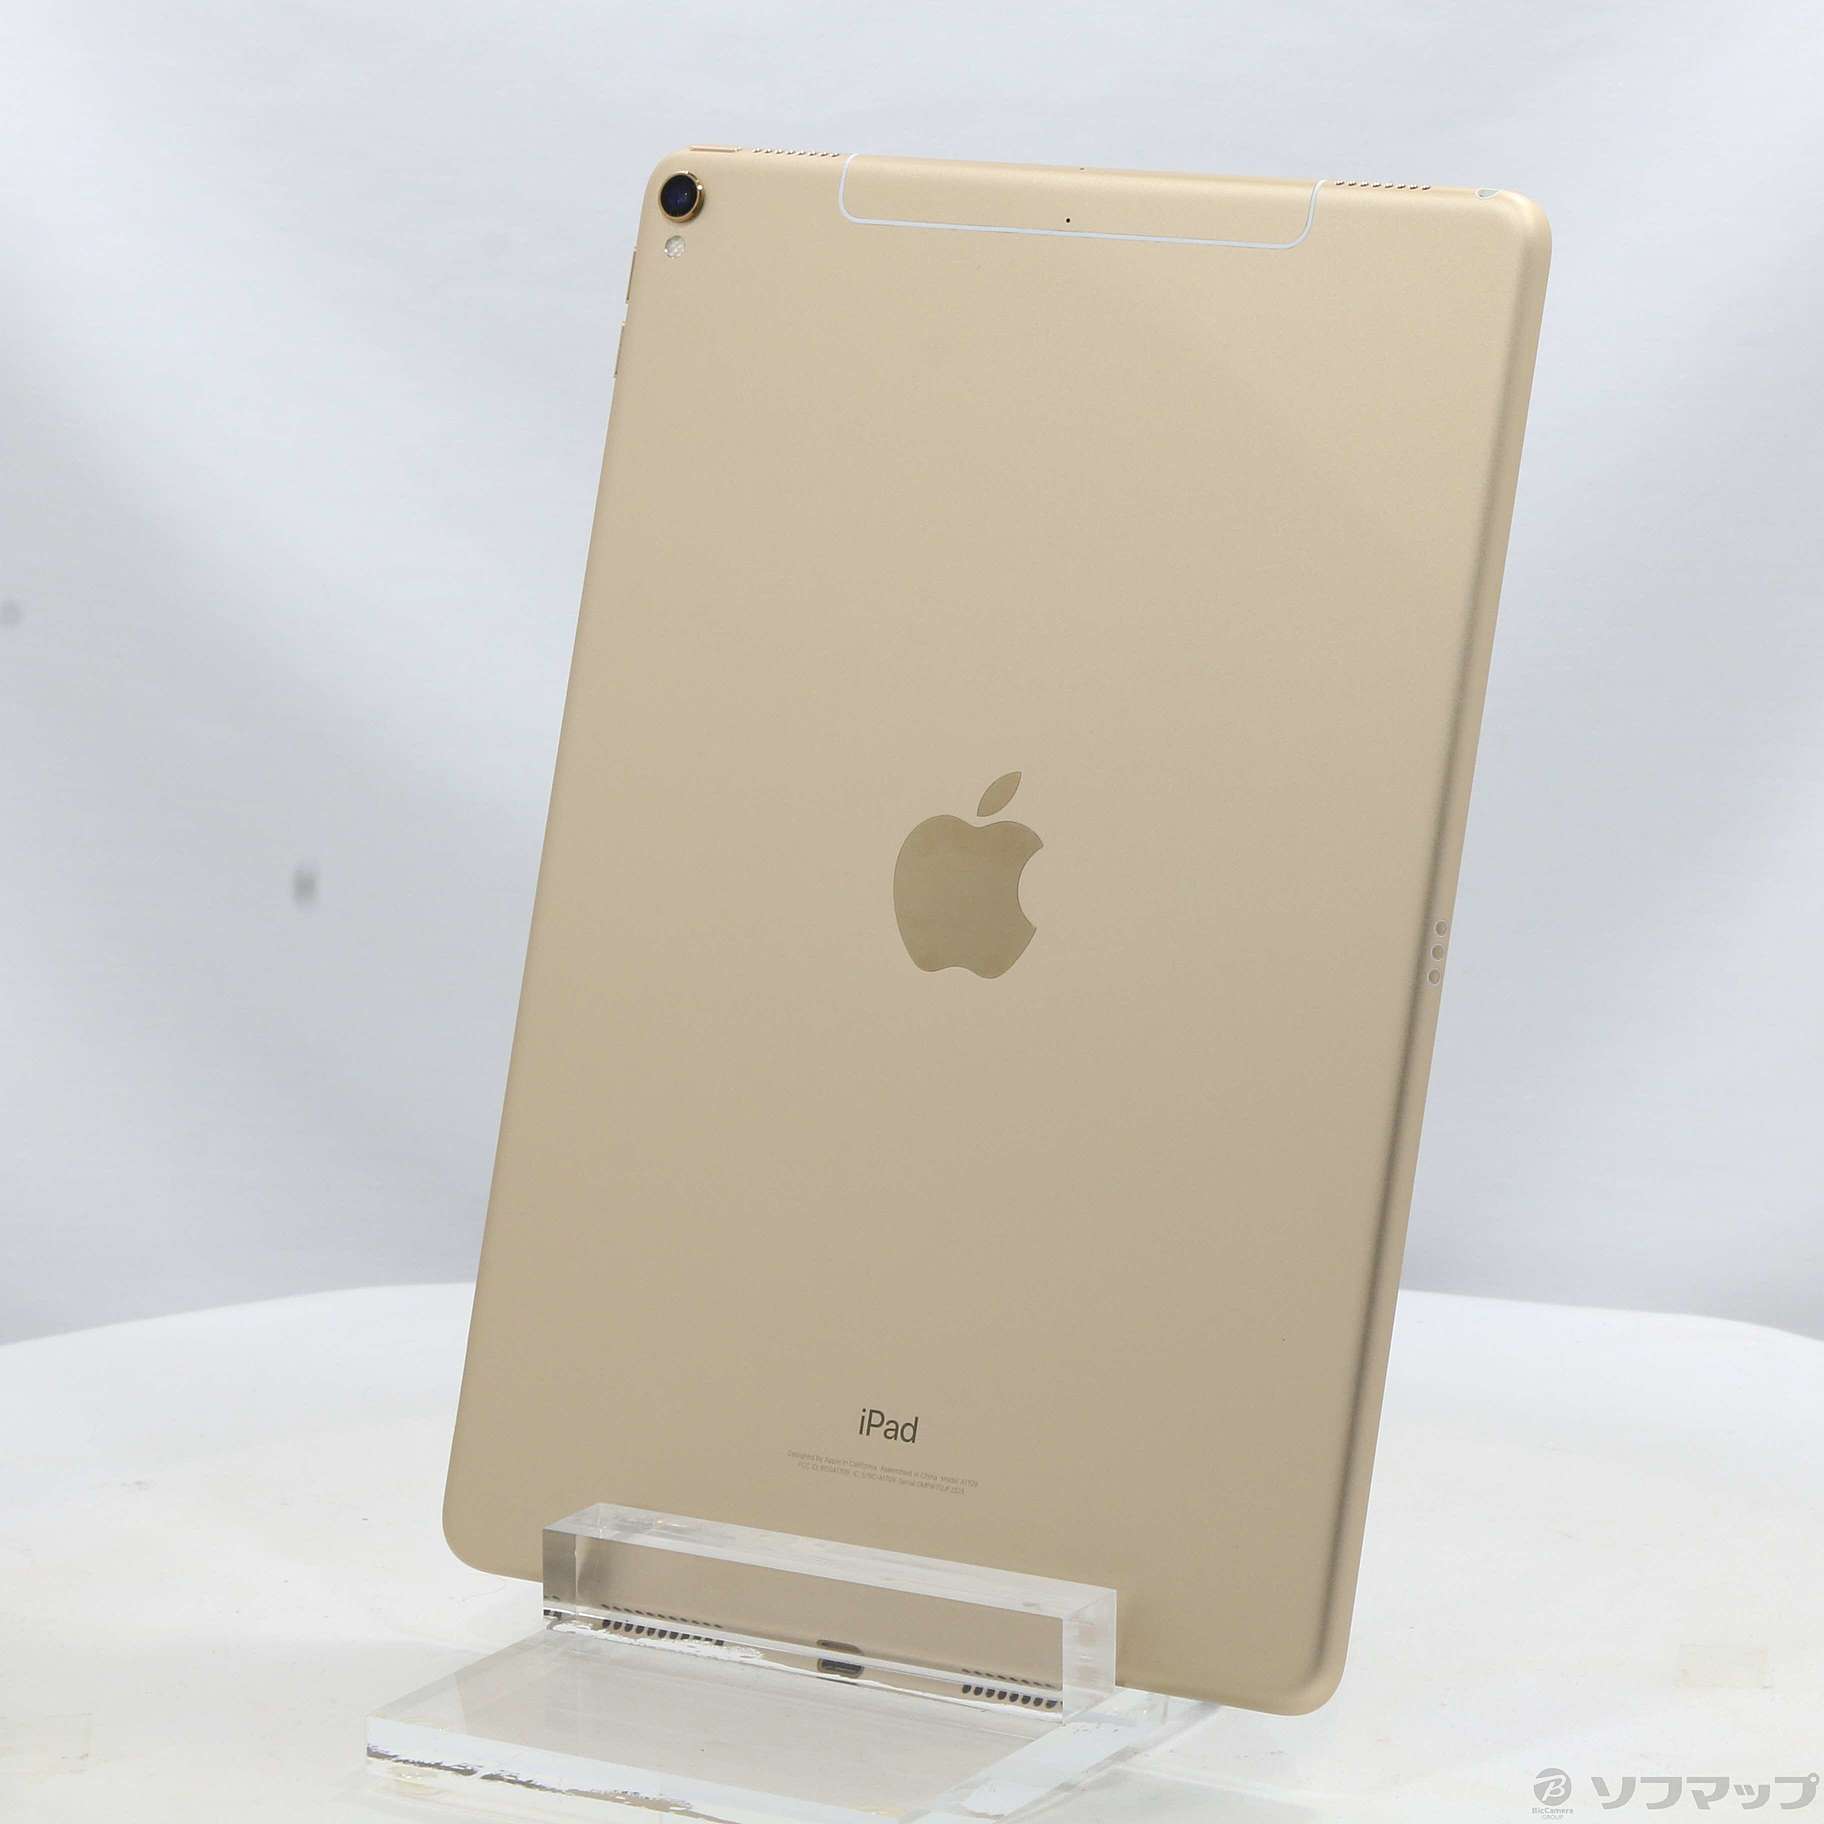 SIMフリー　64GB iPad Pro (10.5) ゴールドPC/タブレット